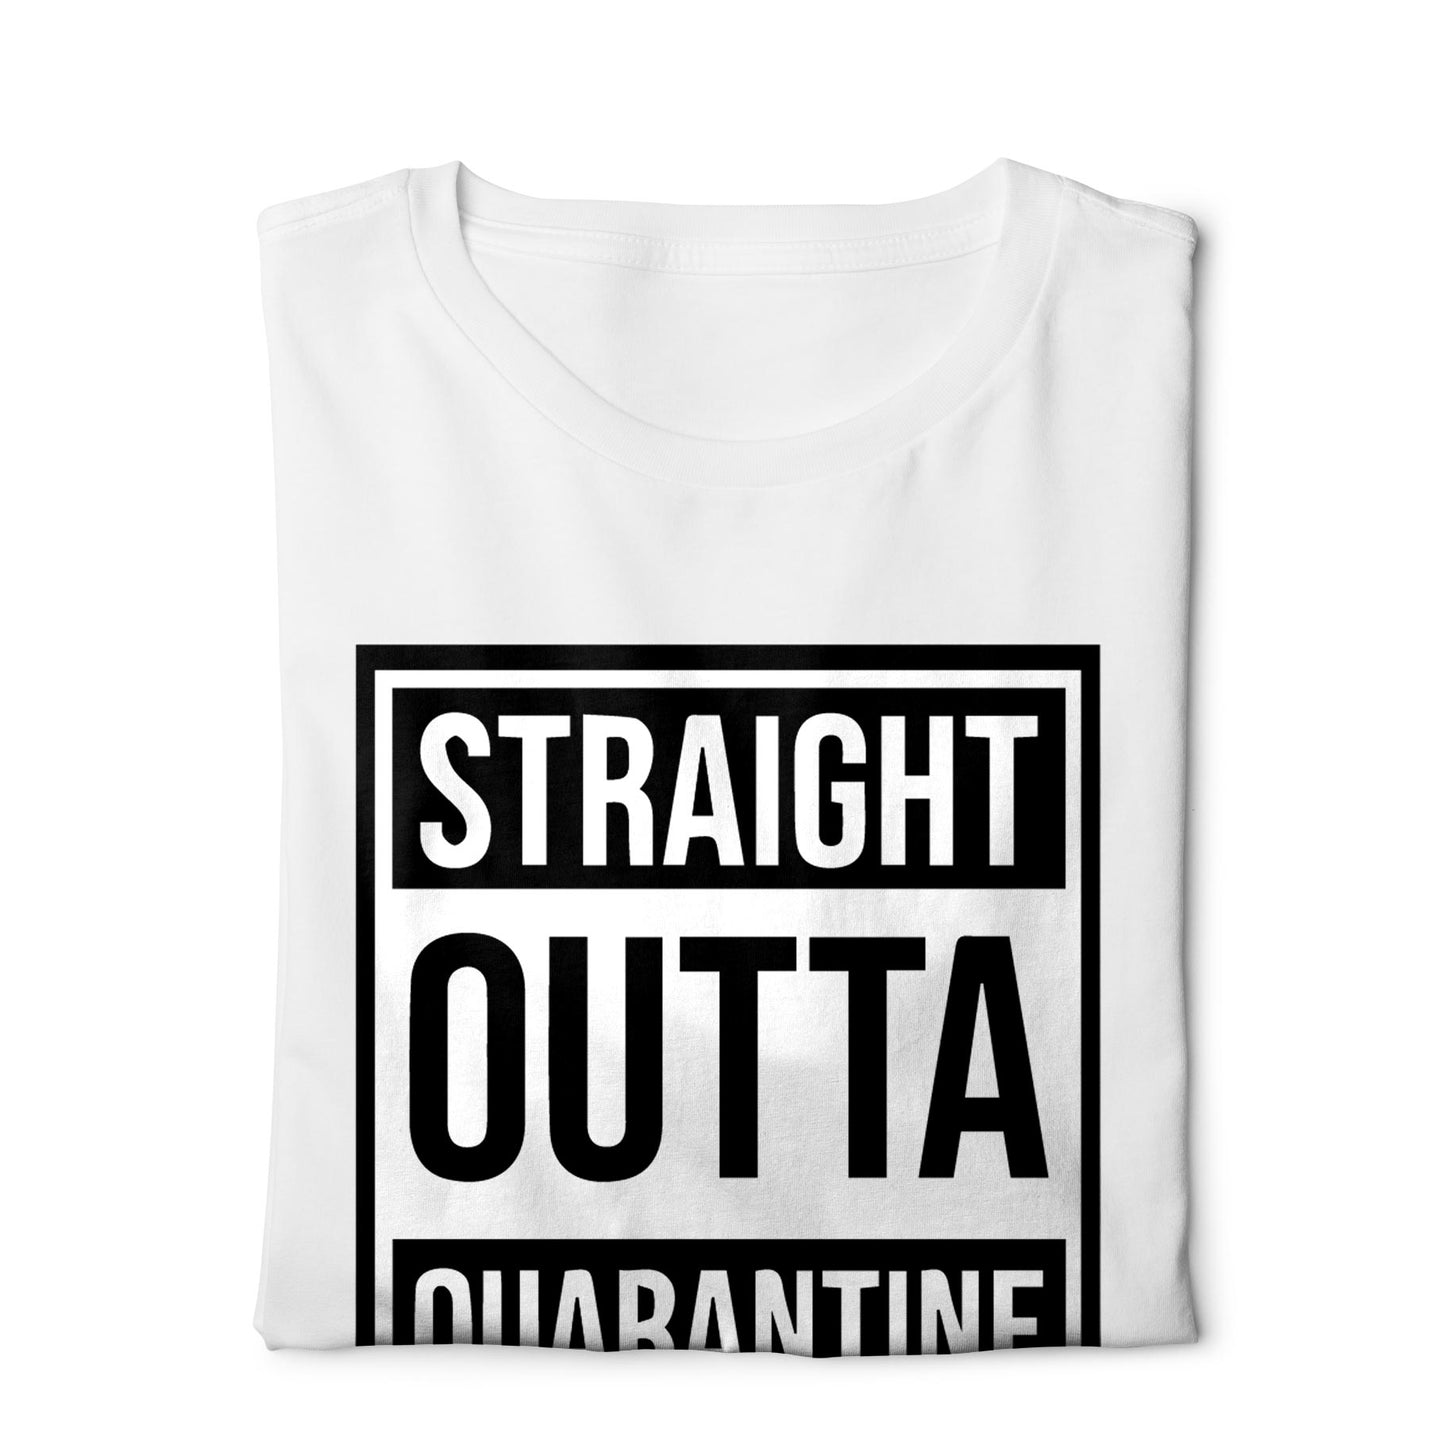 Straight outta quarantine - Digital Graphics Basic T-shirt White - Ravin 